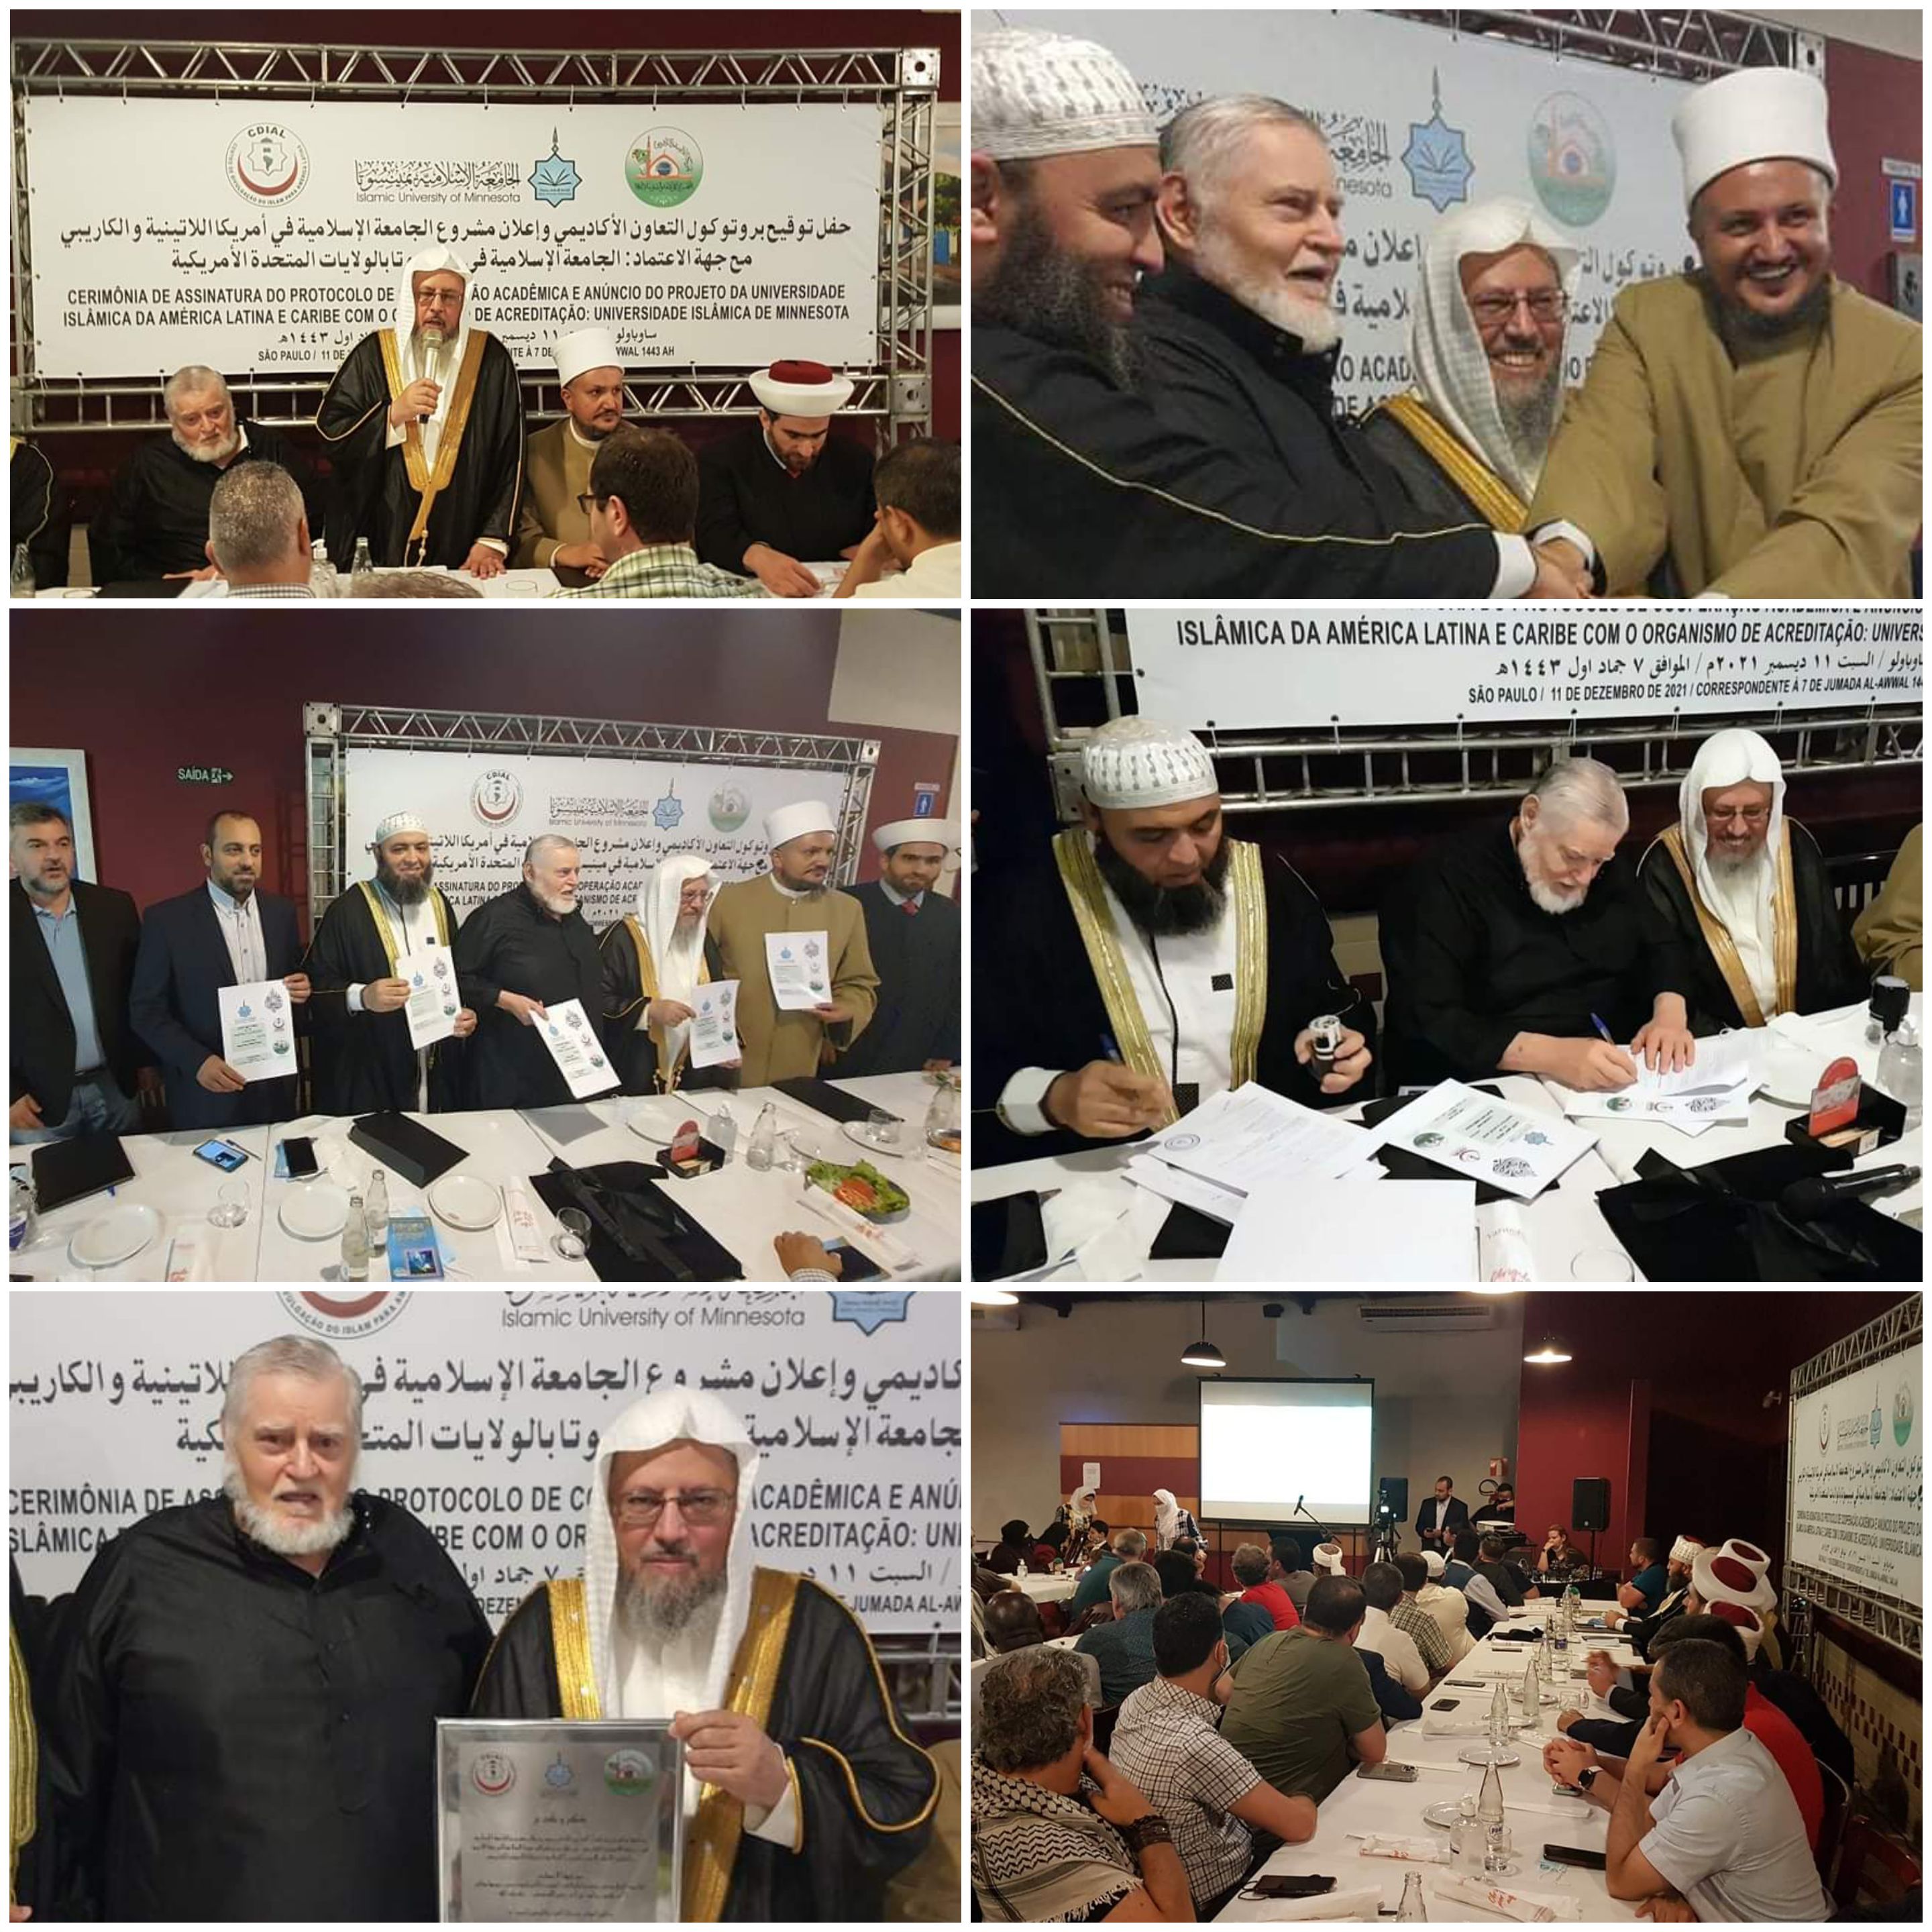 توقيع بروتوكول التعاون الأكاديمي وإعلان مشروع الجامعة الإسلامية في أمريكا اللاتيني